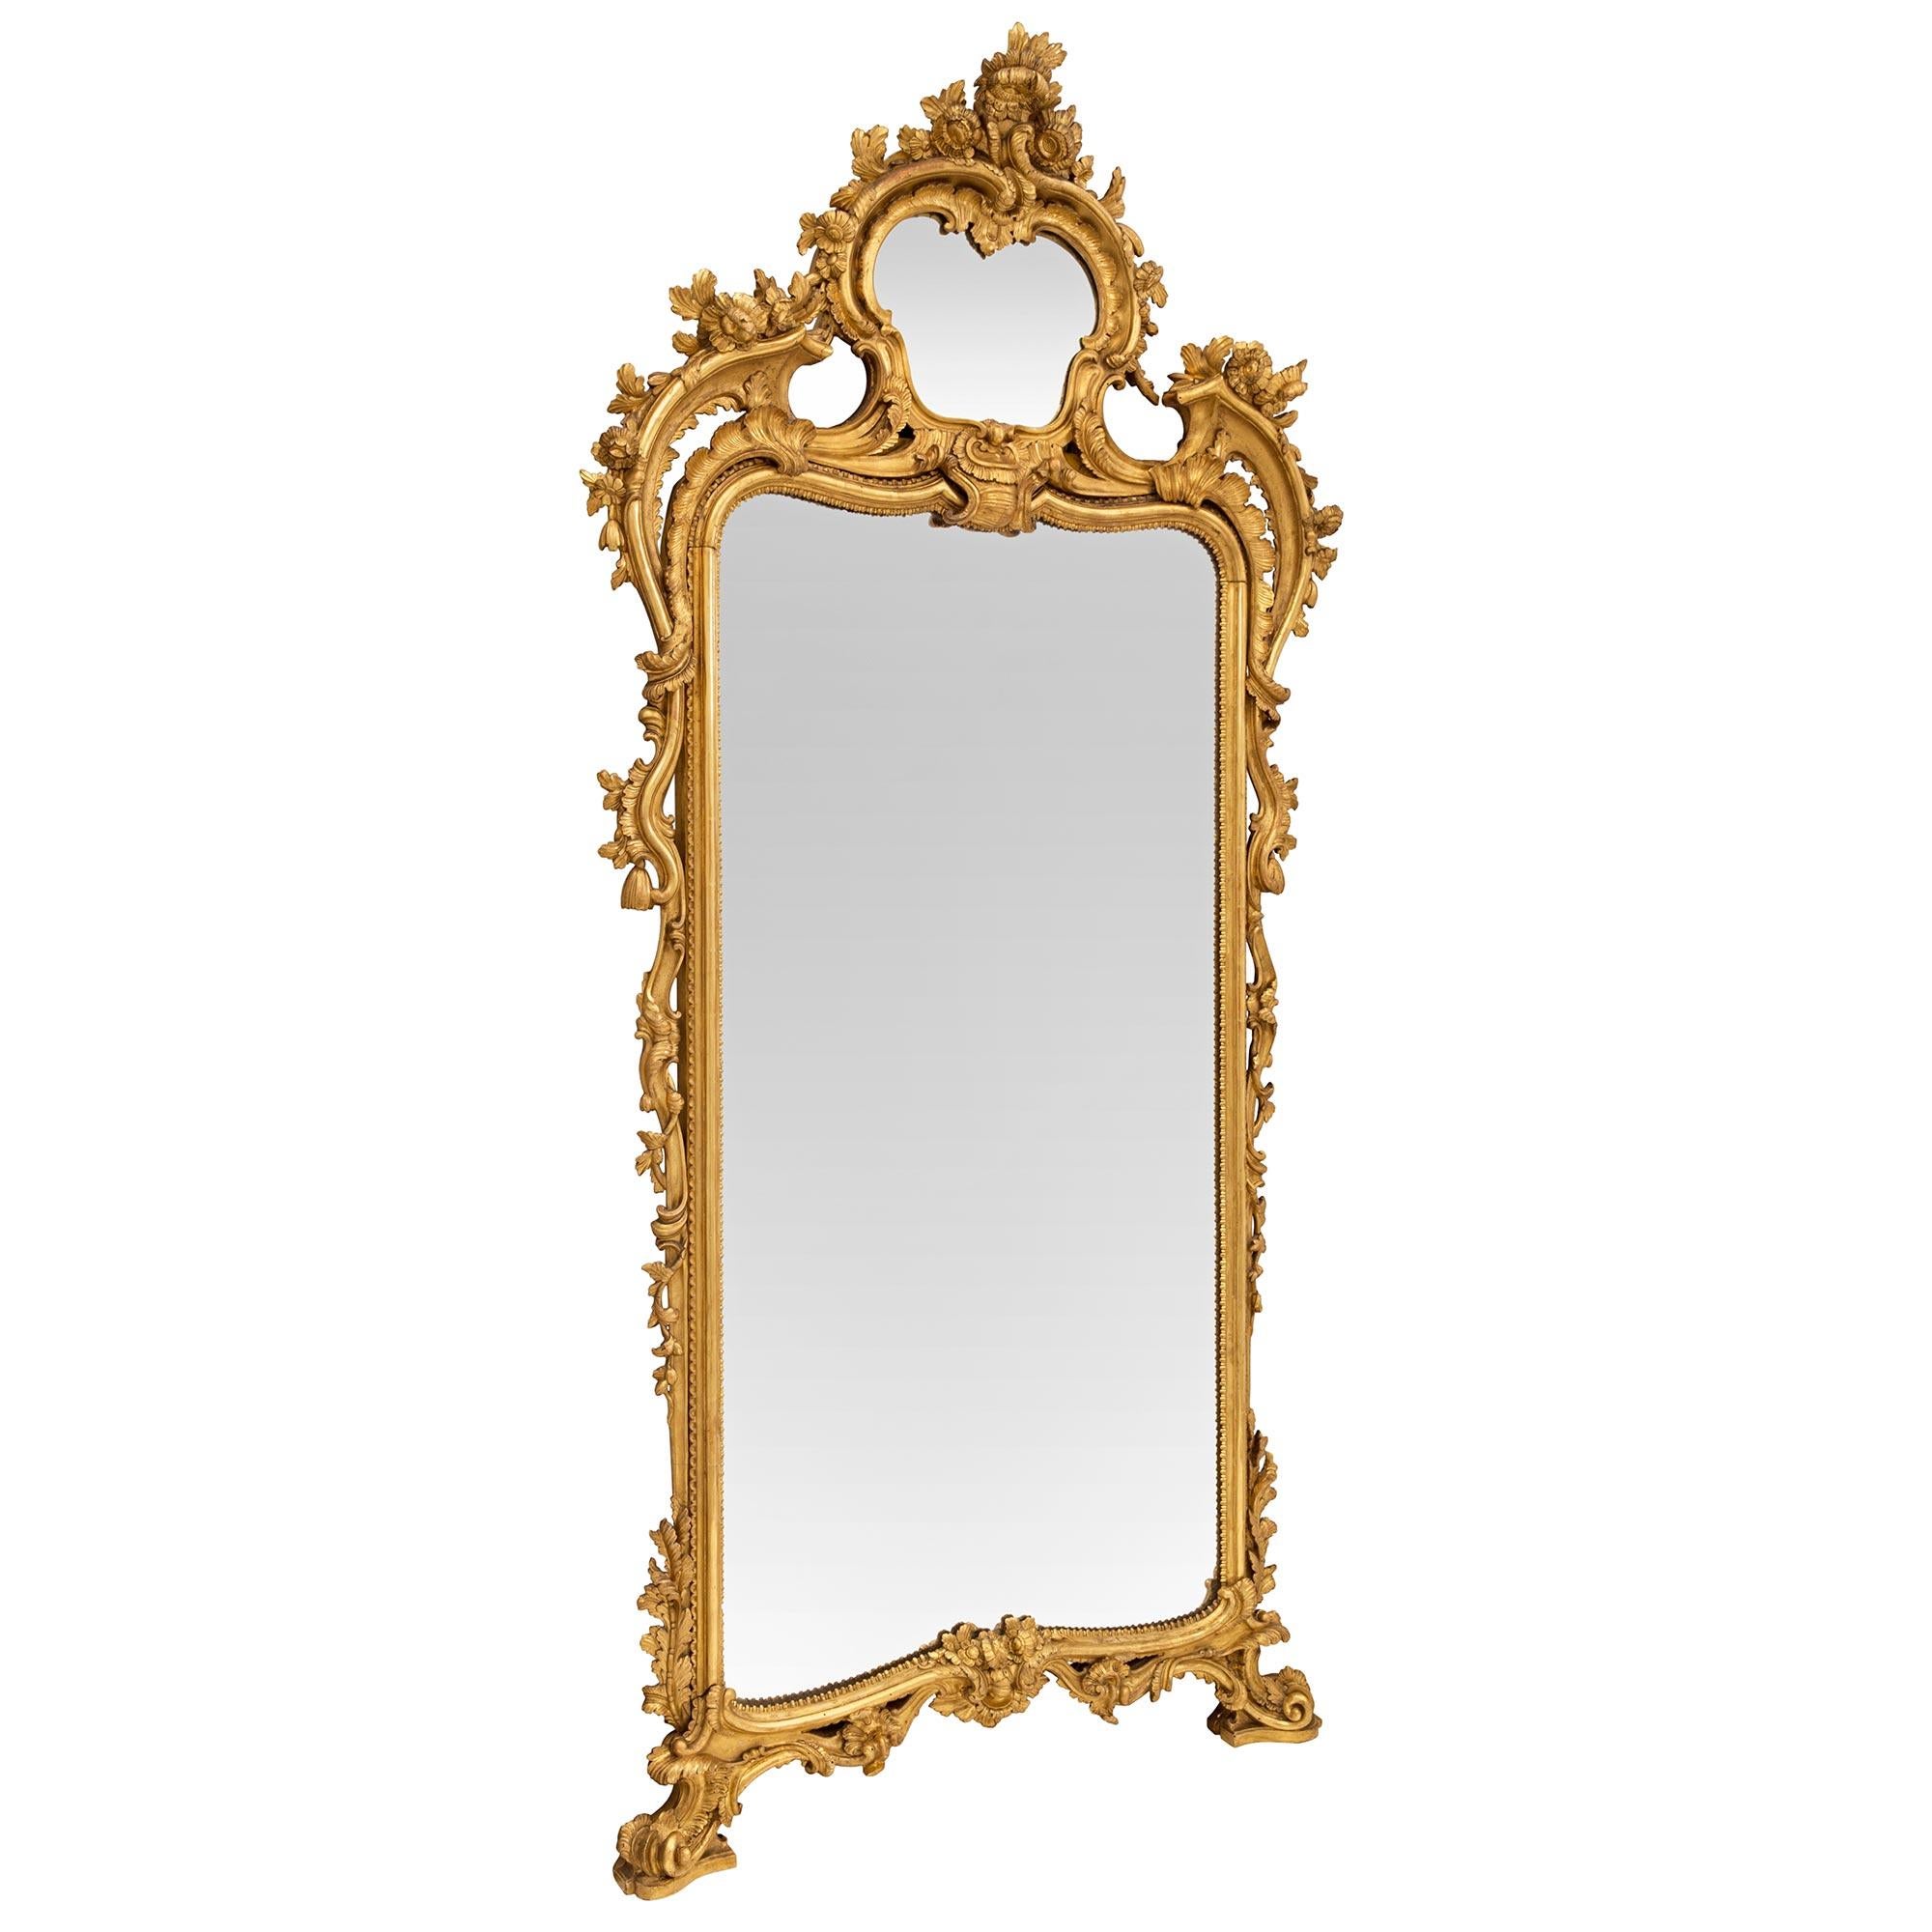 mirror of naples